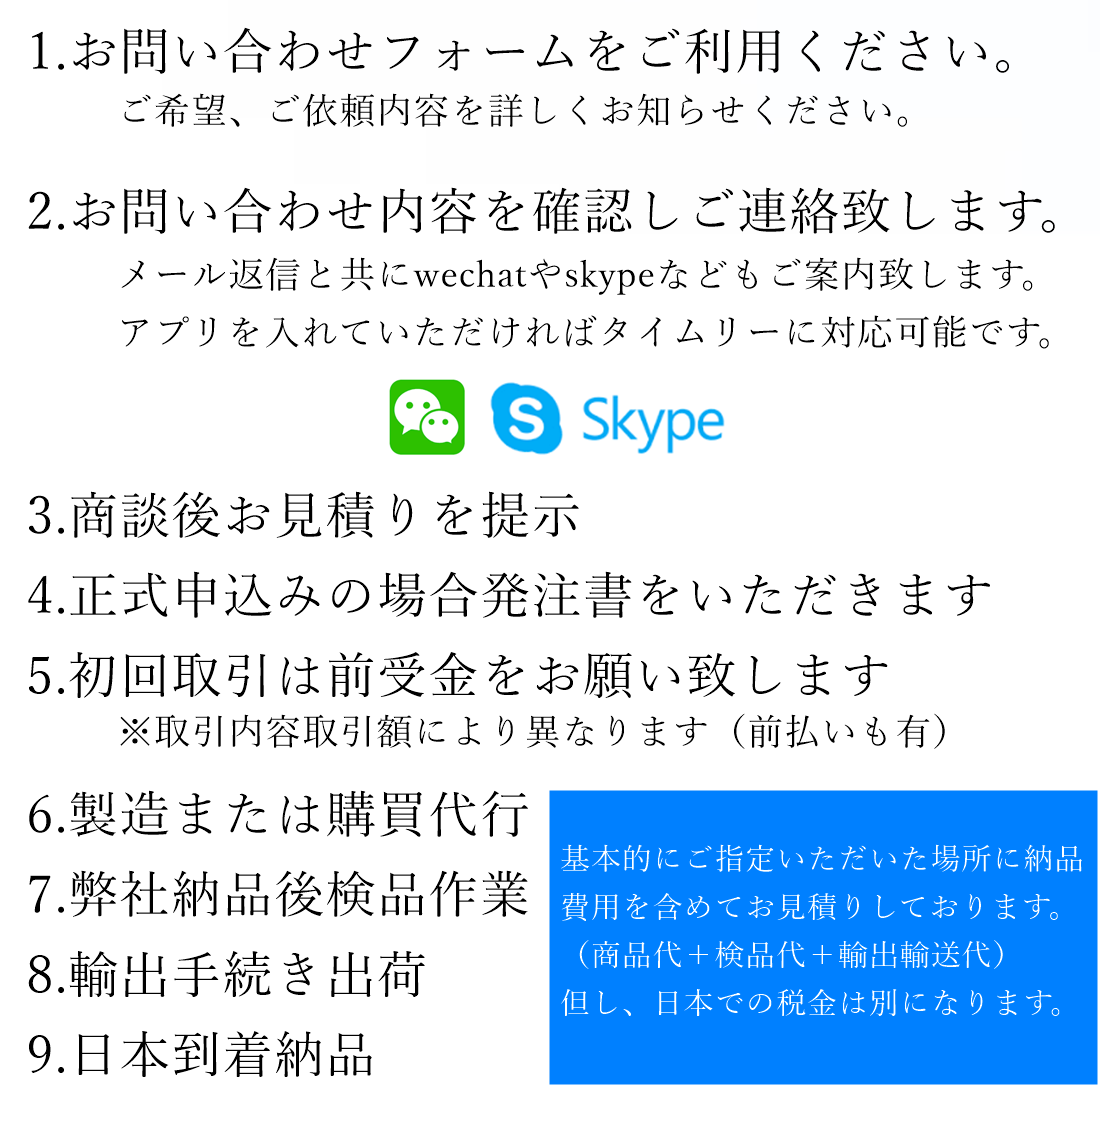 メールフォームよりお問い合わせください。日本語スタッフが丁寧に対応致します。